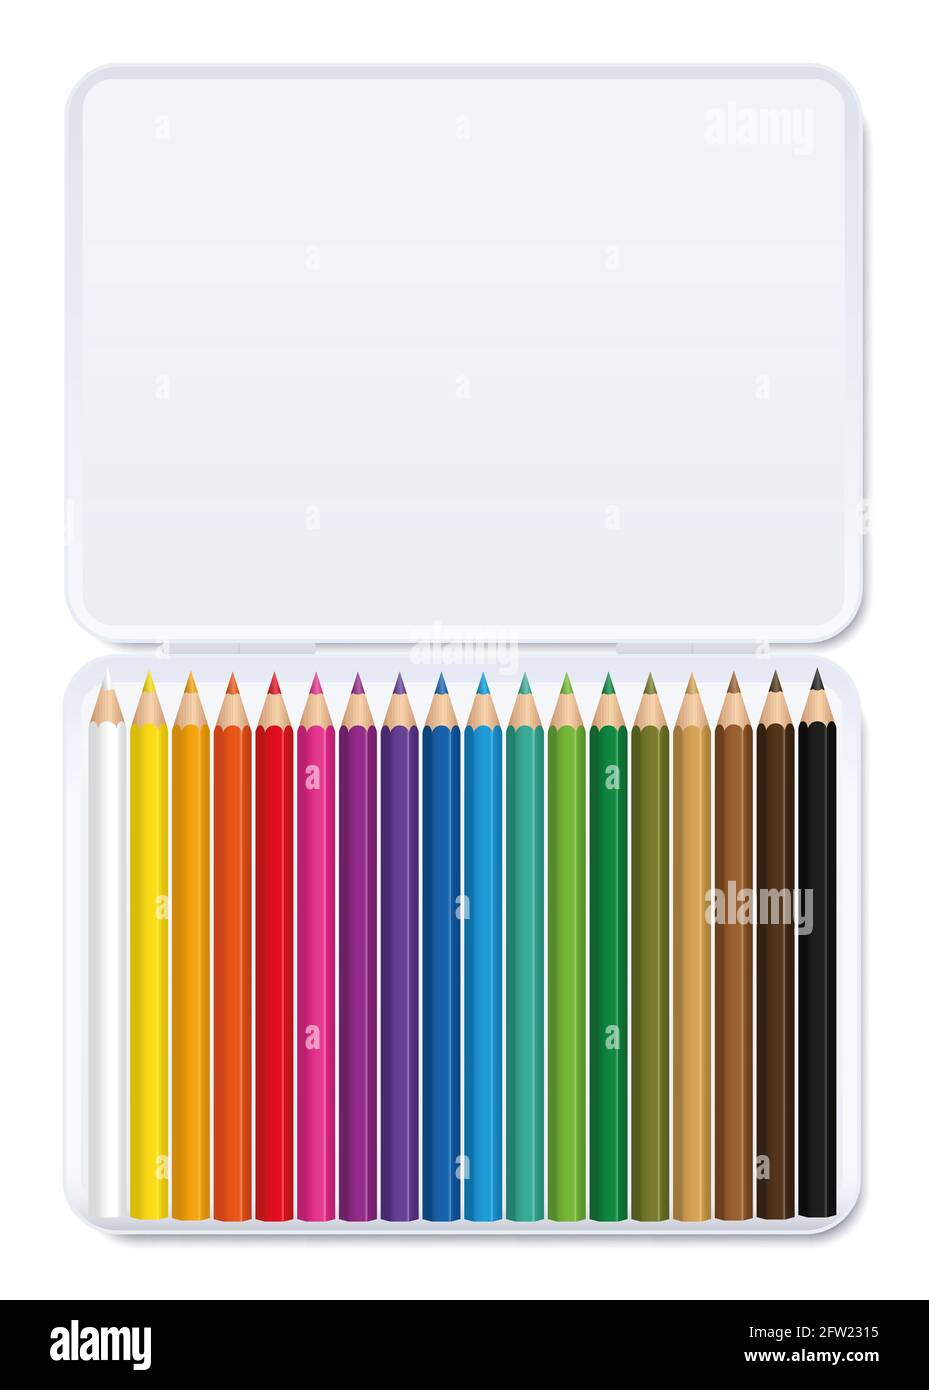 Farbstift in einer weißen Metallbox, sortiert nach Farbe - Illustration auf weißem Hintergrund. Stockfoto